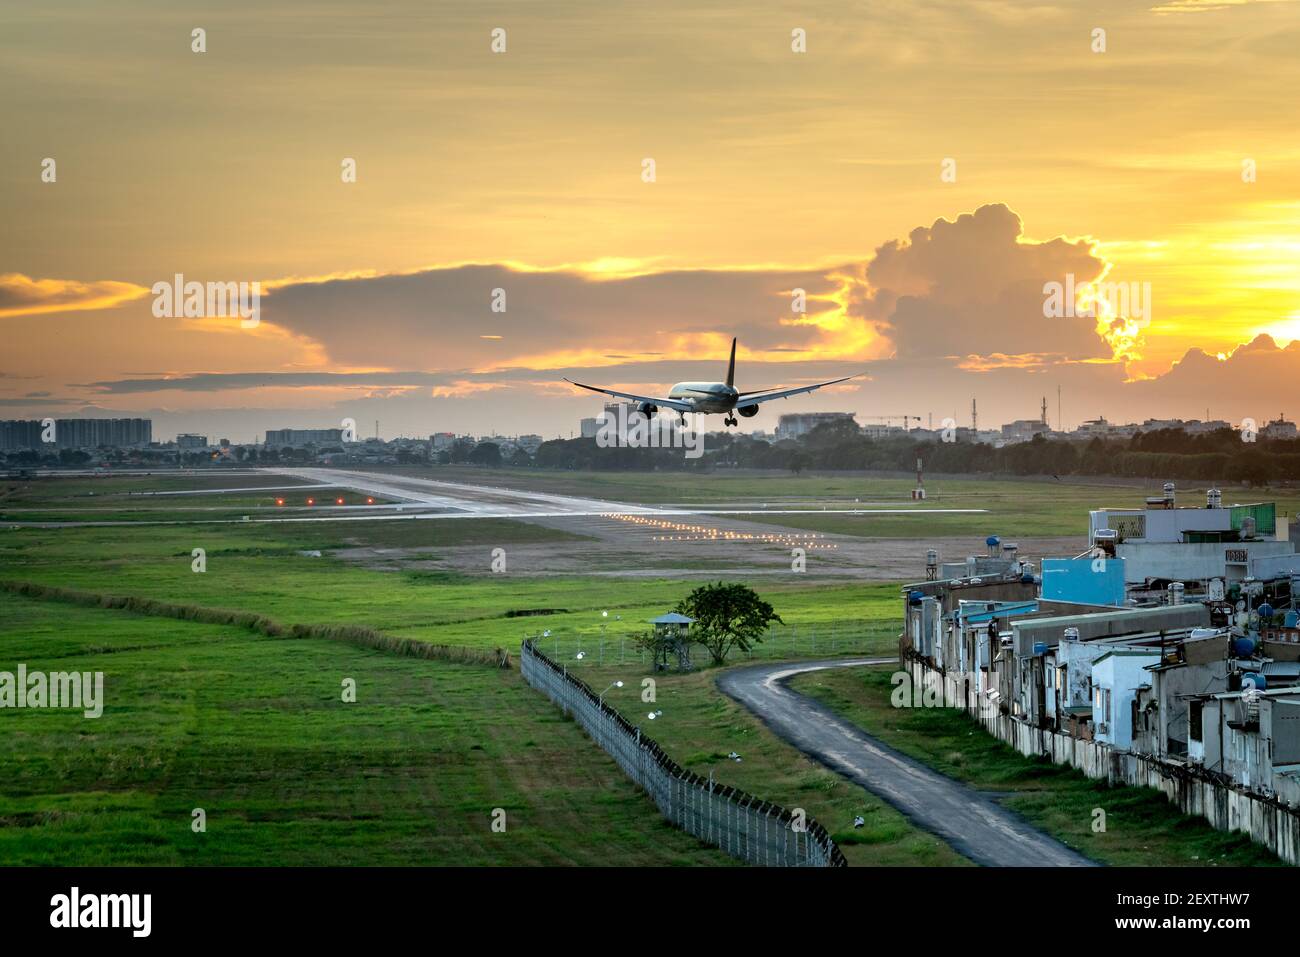 Aeroporto Tan Son Nhat, ho Chi Minh City, Vietnam - 28 febbraio 2021: L'aereo commerciale sta per atterrare all'aeroporto Tan Son Nhat nel bel pomeriggio Foto Stock